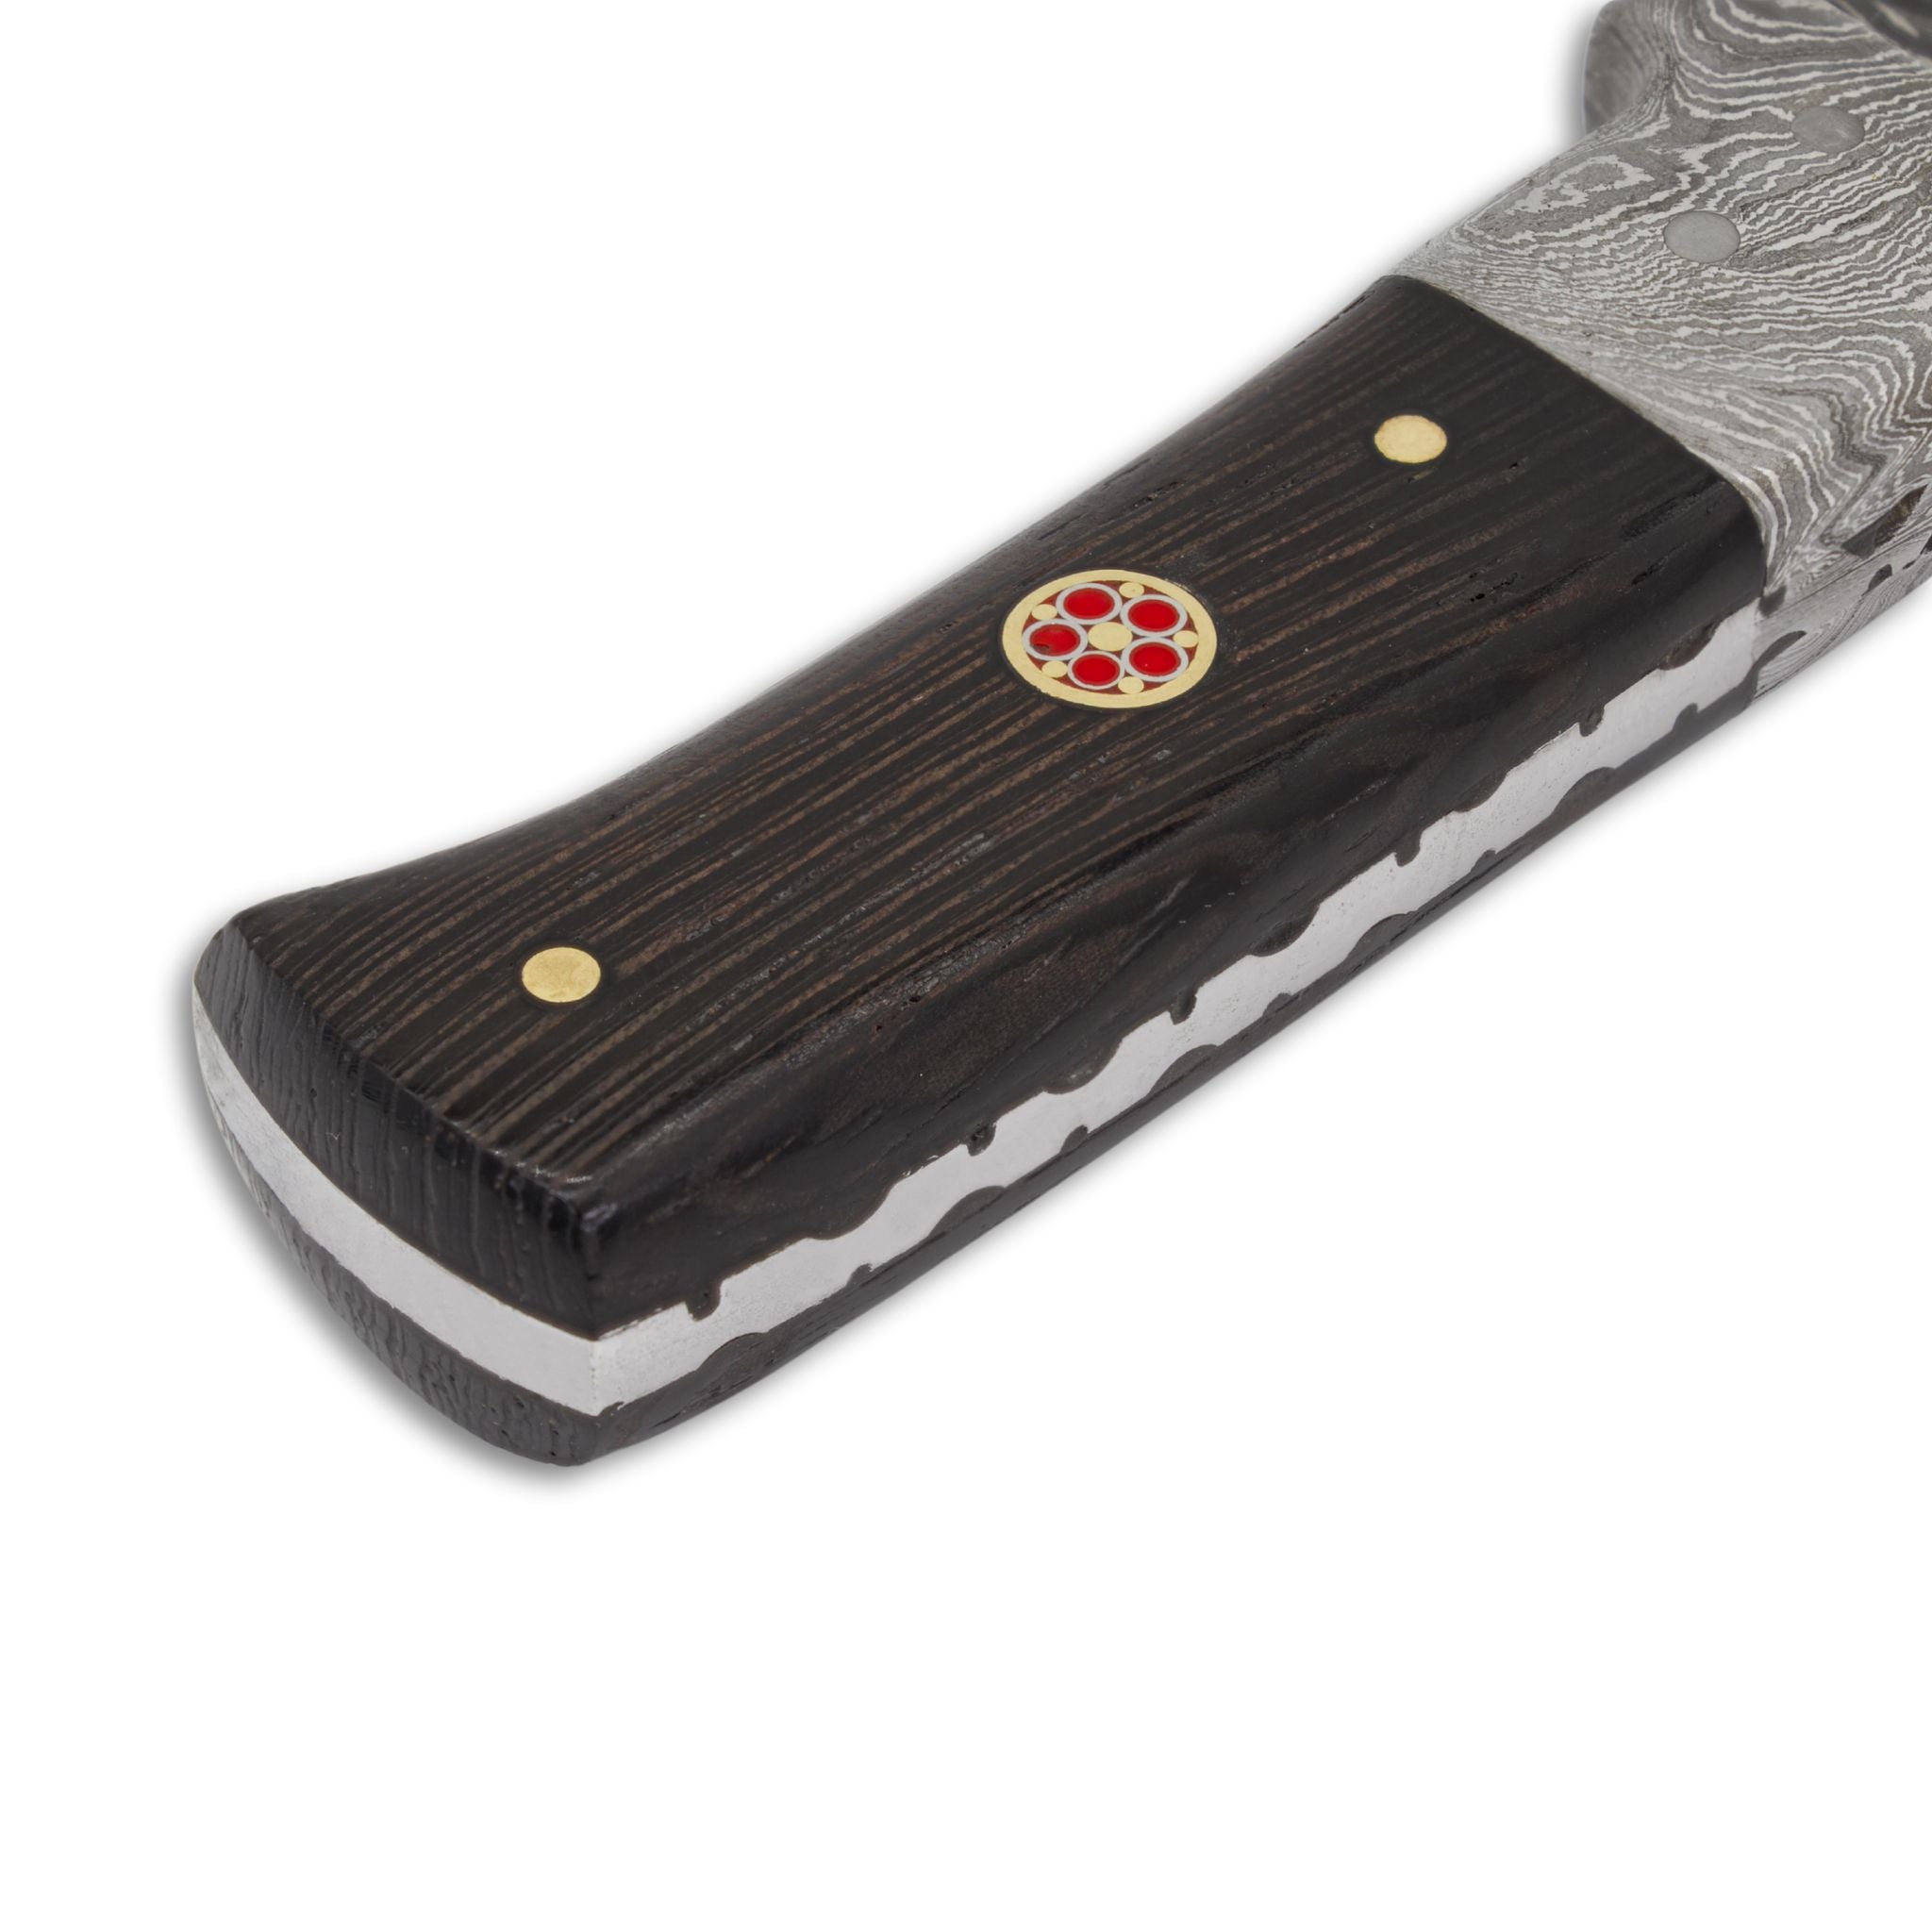 Bush Perk I Handmade Skinner Knife Damascus Steel Blade Wenge Wood Handle